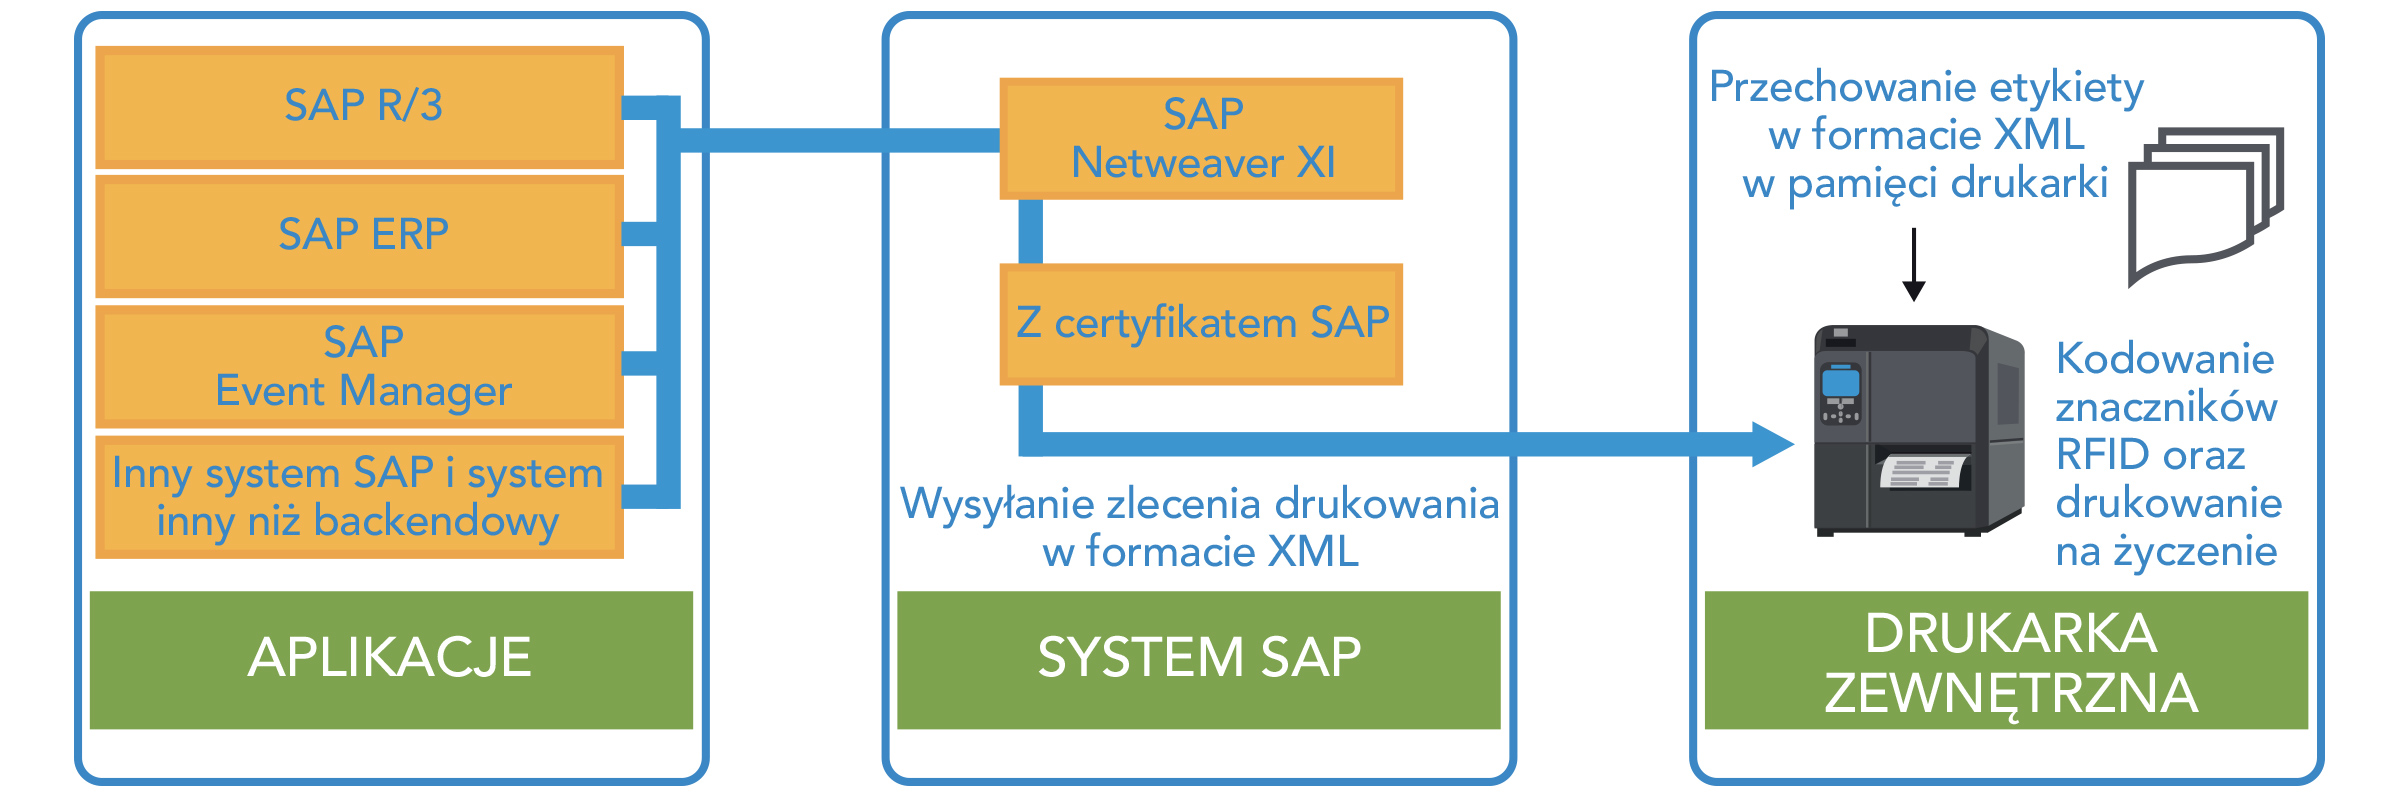 Aplikacje > System SAP > Urządzenia drukujące